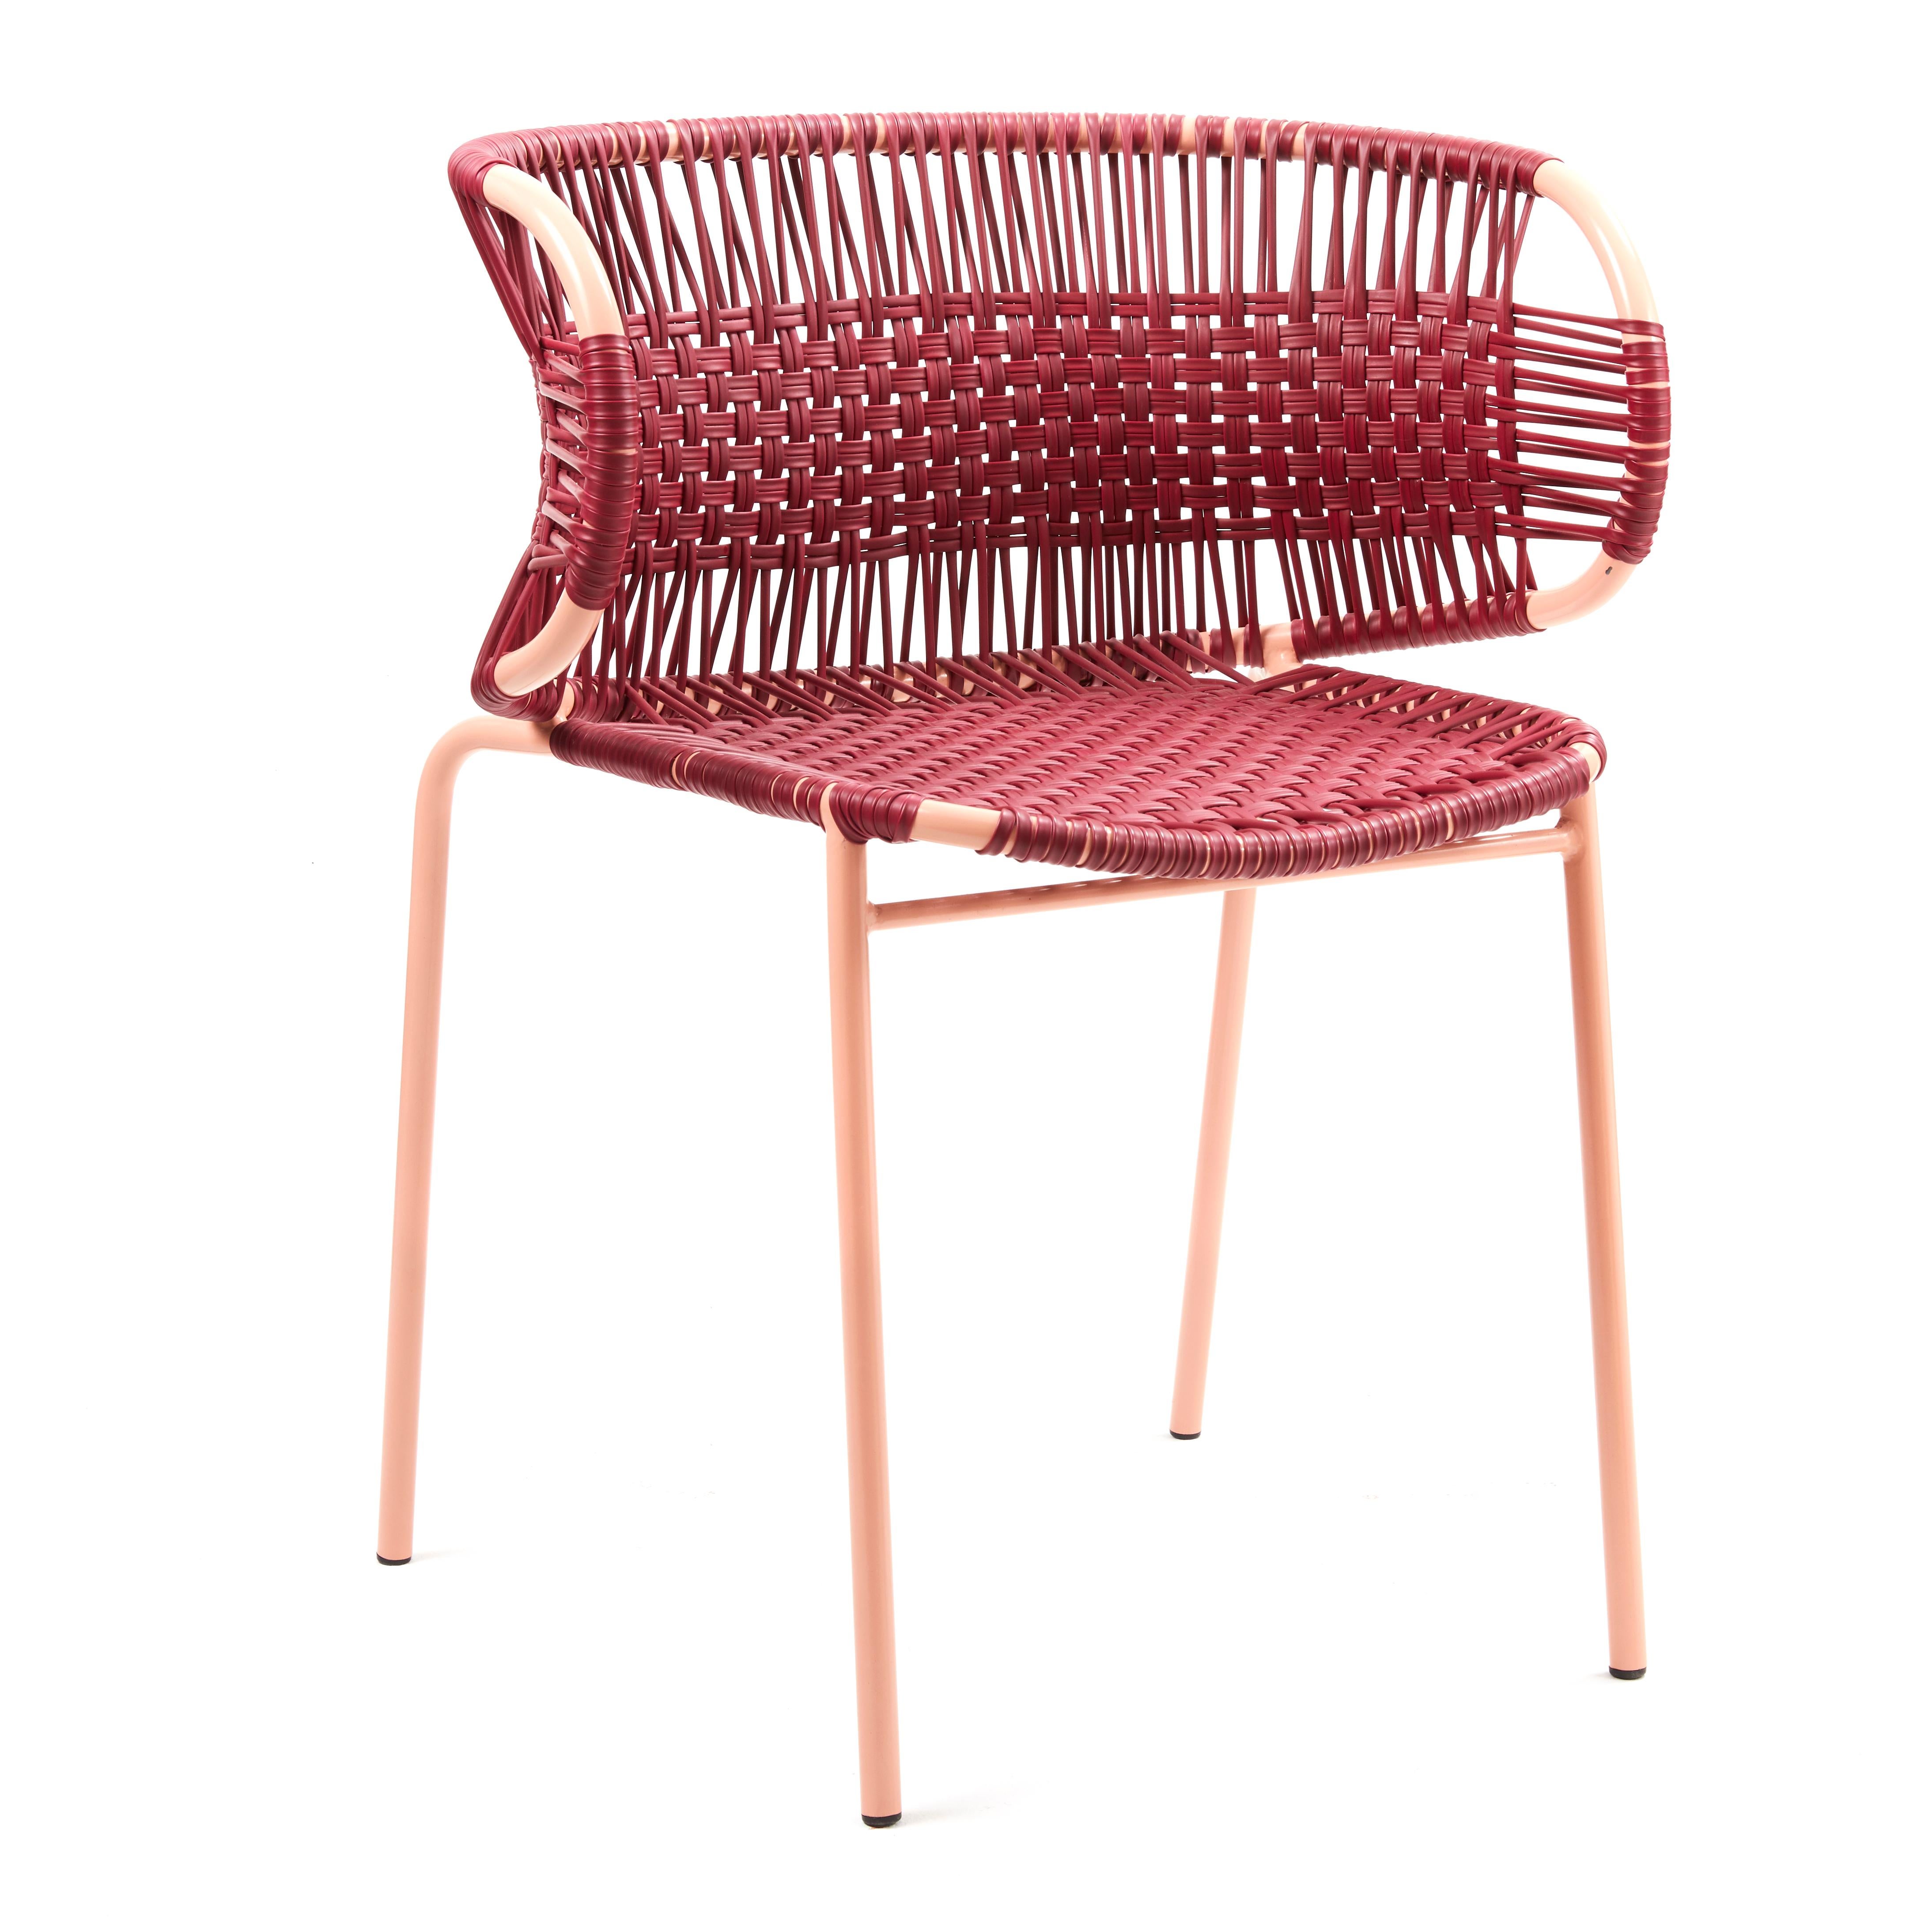 Lila Cielo stapelbarer Stuhl mit Armlehne von Sebastian Herkner
MATERIALIEN: Verzinktes und pulverbeschichtetes Stahlrohr. PVC-Schnüre werden aus recyceltem Kunststoff hergestellt.
Technik: Hergestellt aus recyceltem Kunststoff und gewebt von